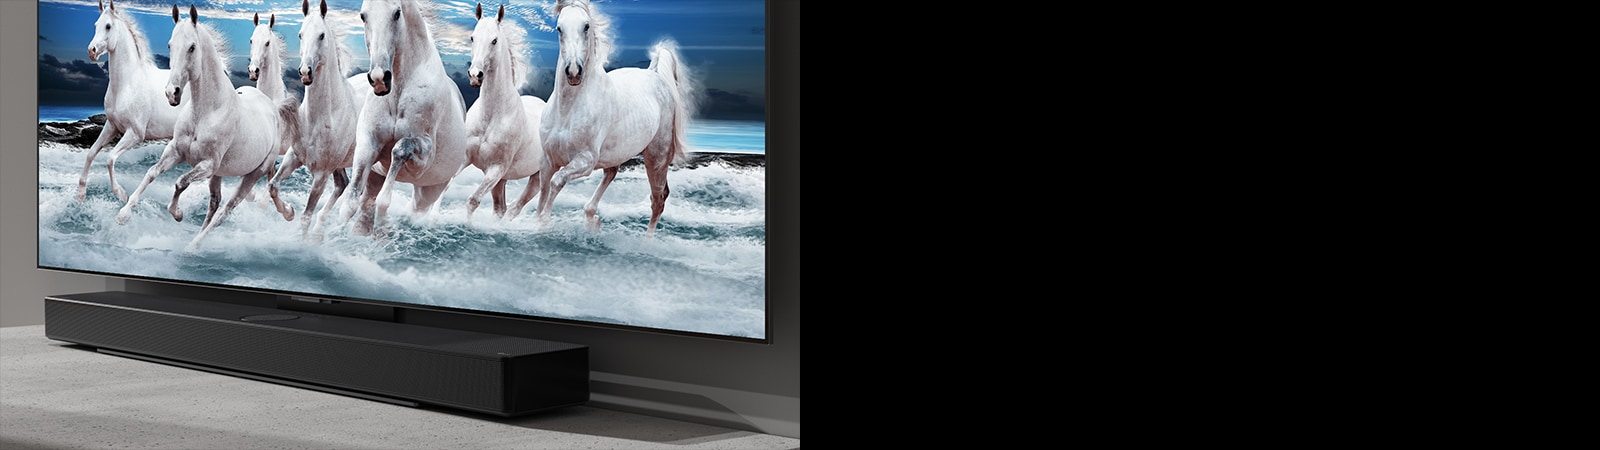 Skaņas panelis un TV ir novietoti uz balta galdiņa, un TV ekrānā redzami 7 balti zirgi.